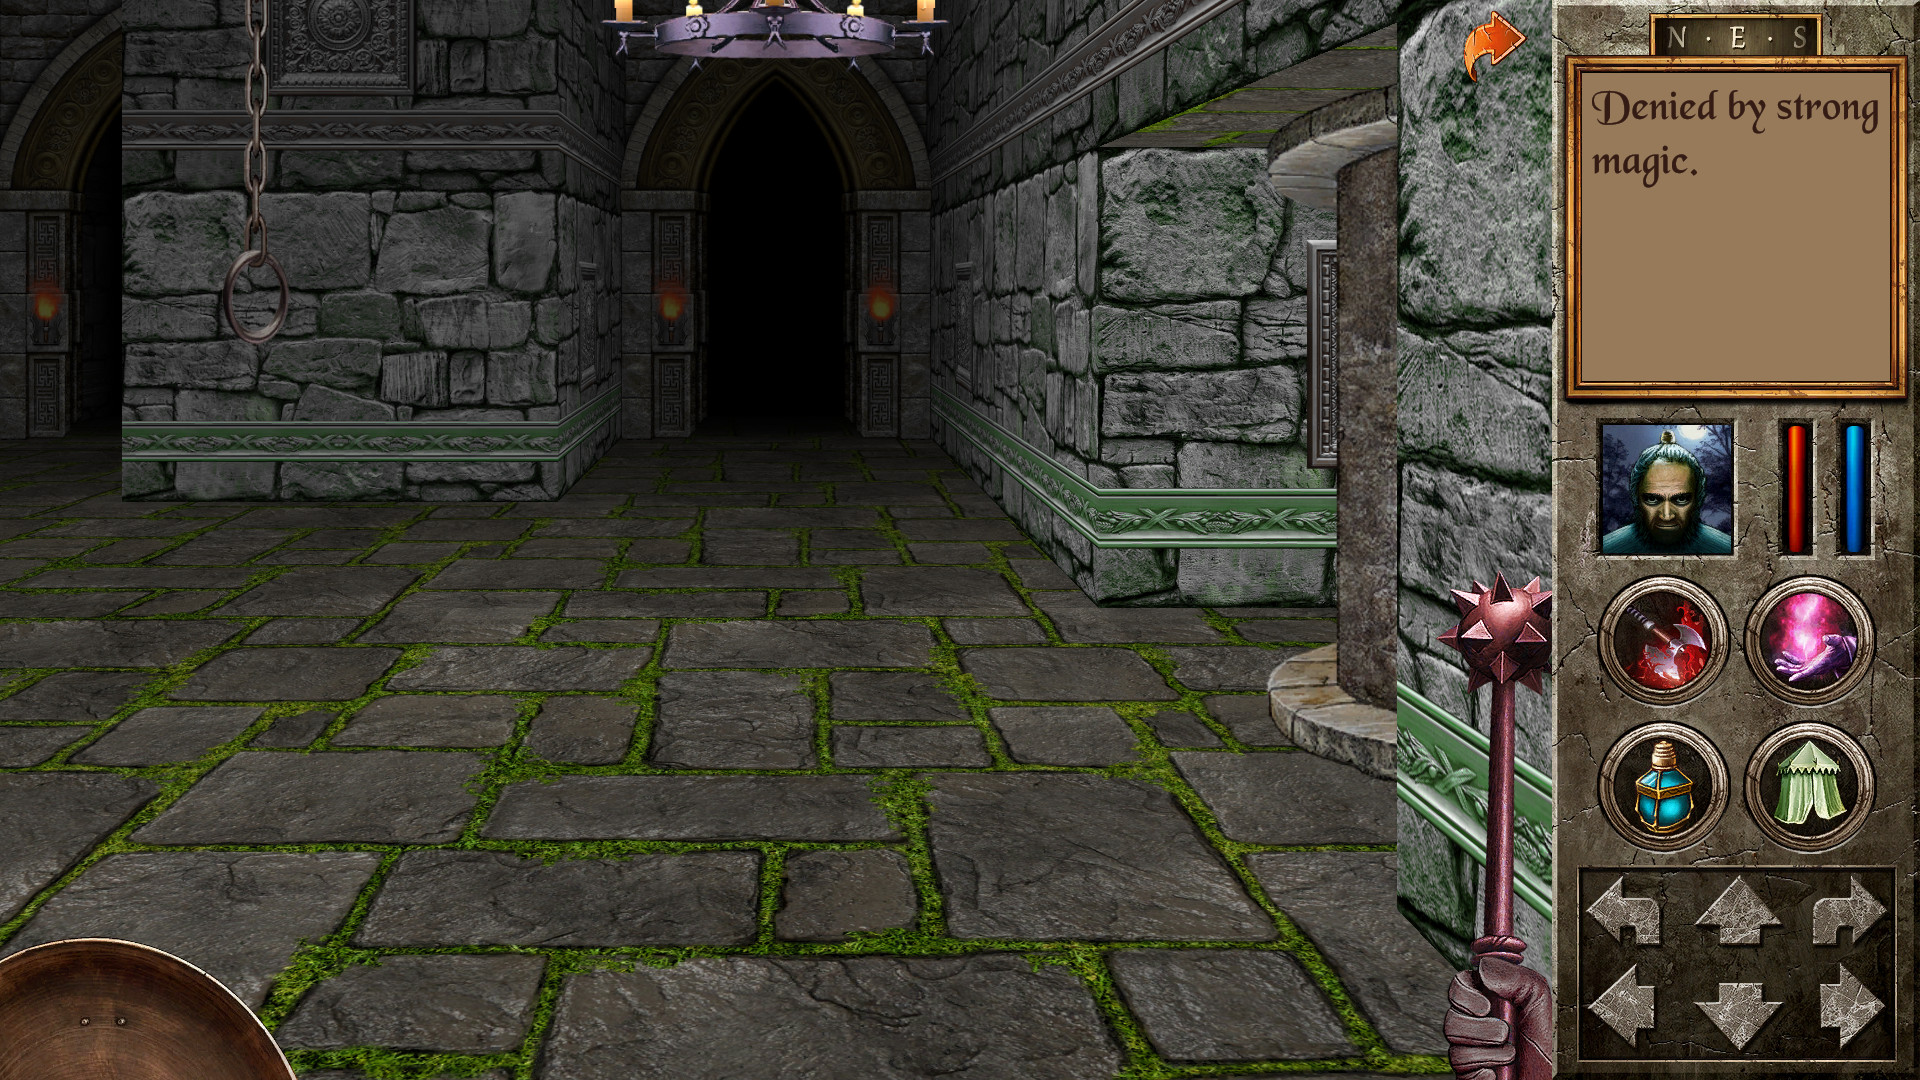 Квест игра мода. The Quest игра Redshift. Quest 2006. Quest игра 2000. The Quest (2006 Video game).